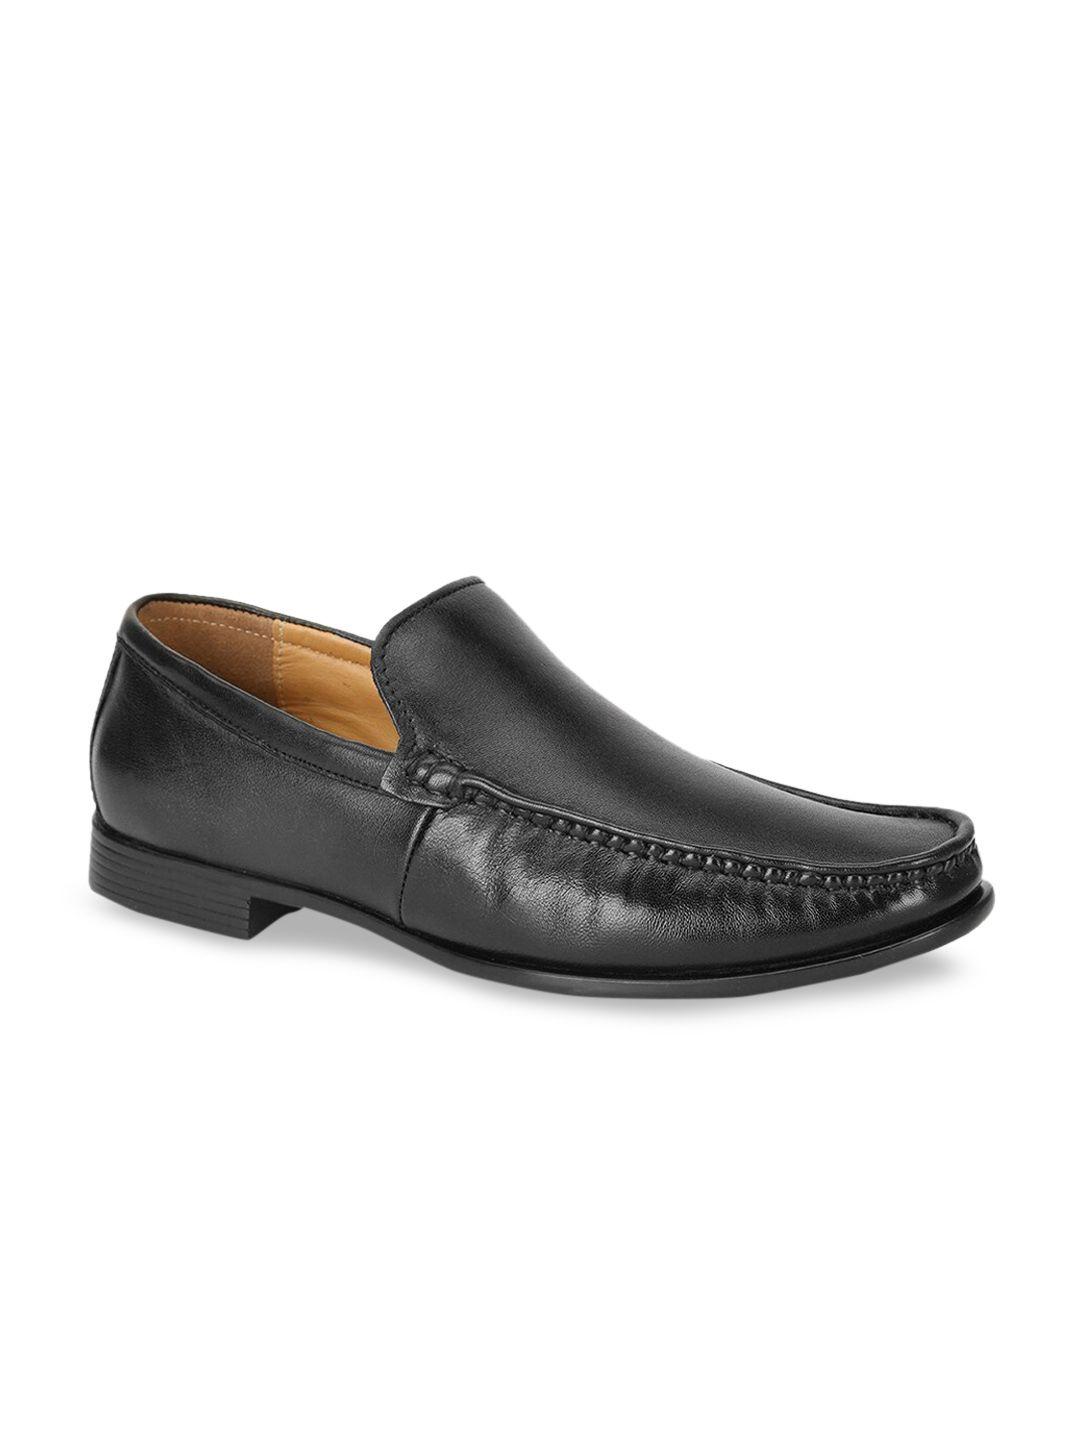 bata-men-black-solid-leather-formal-loafers